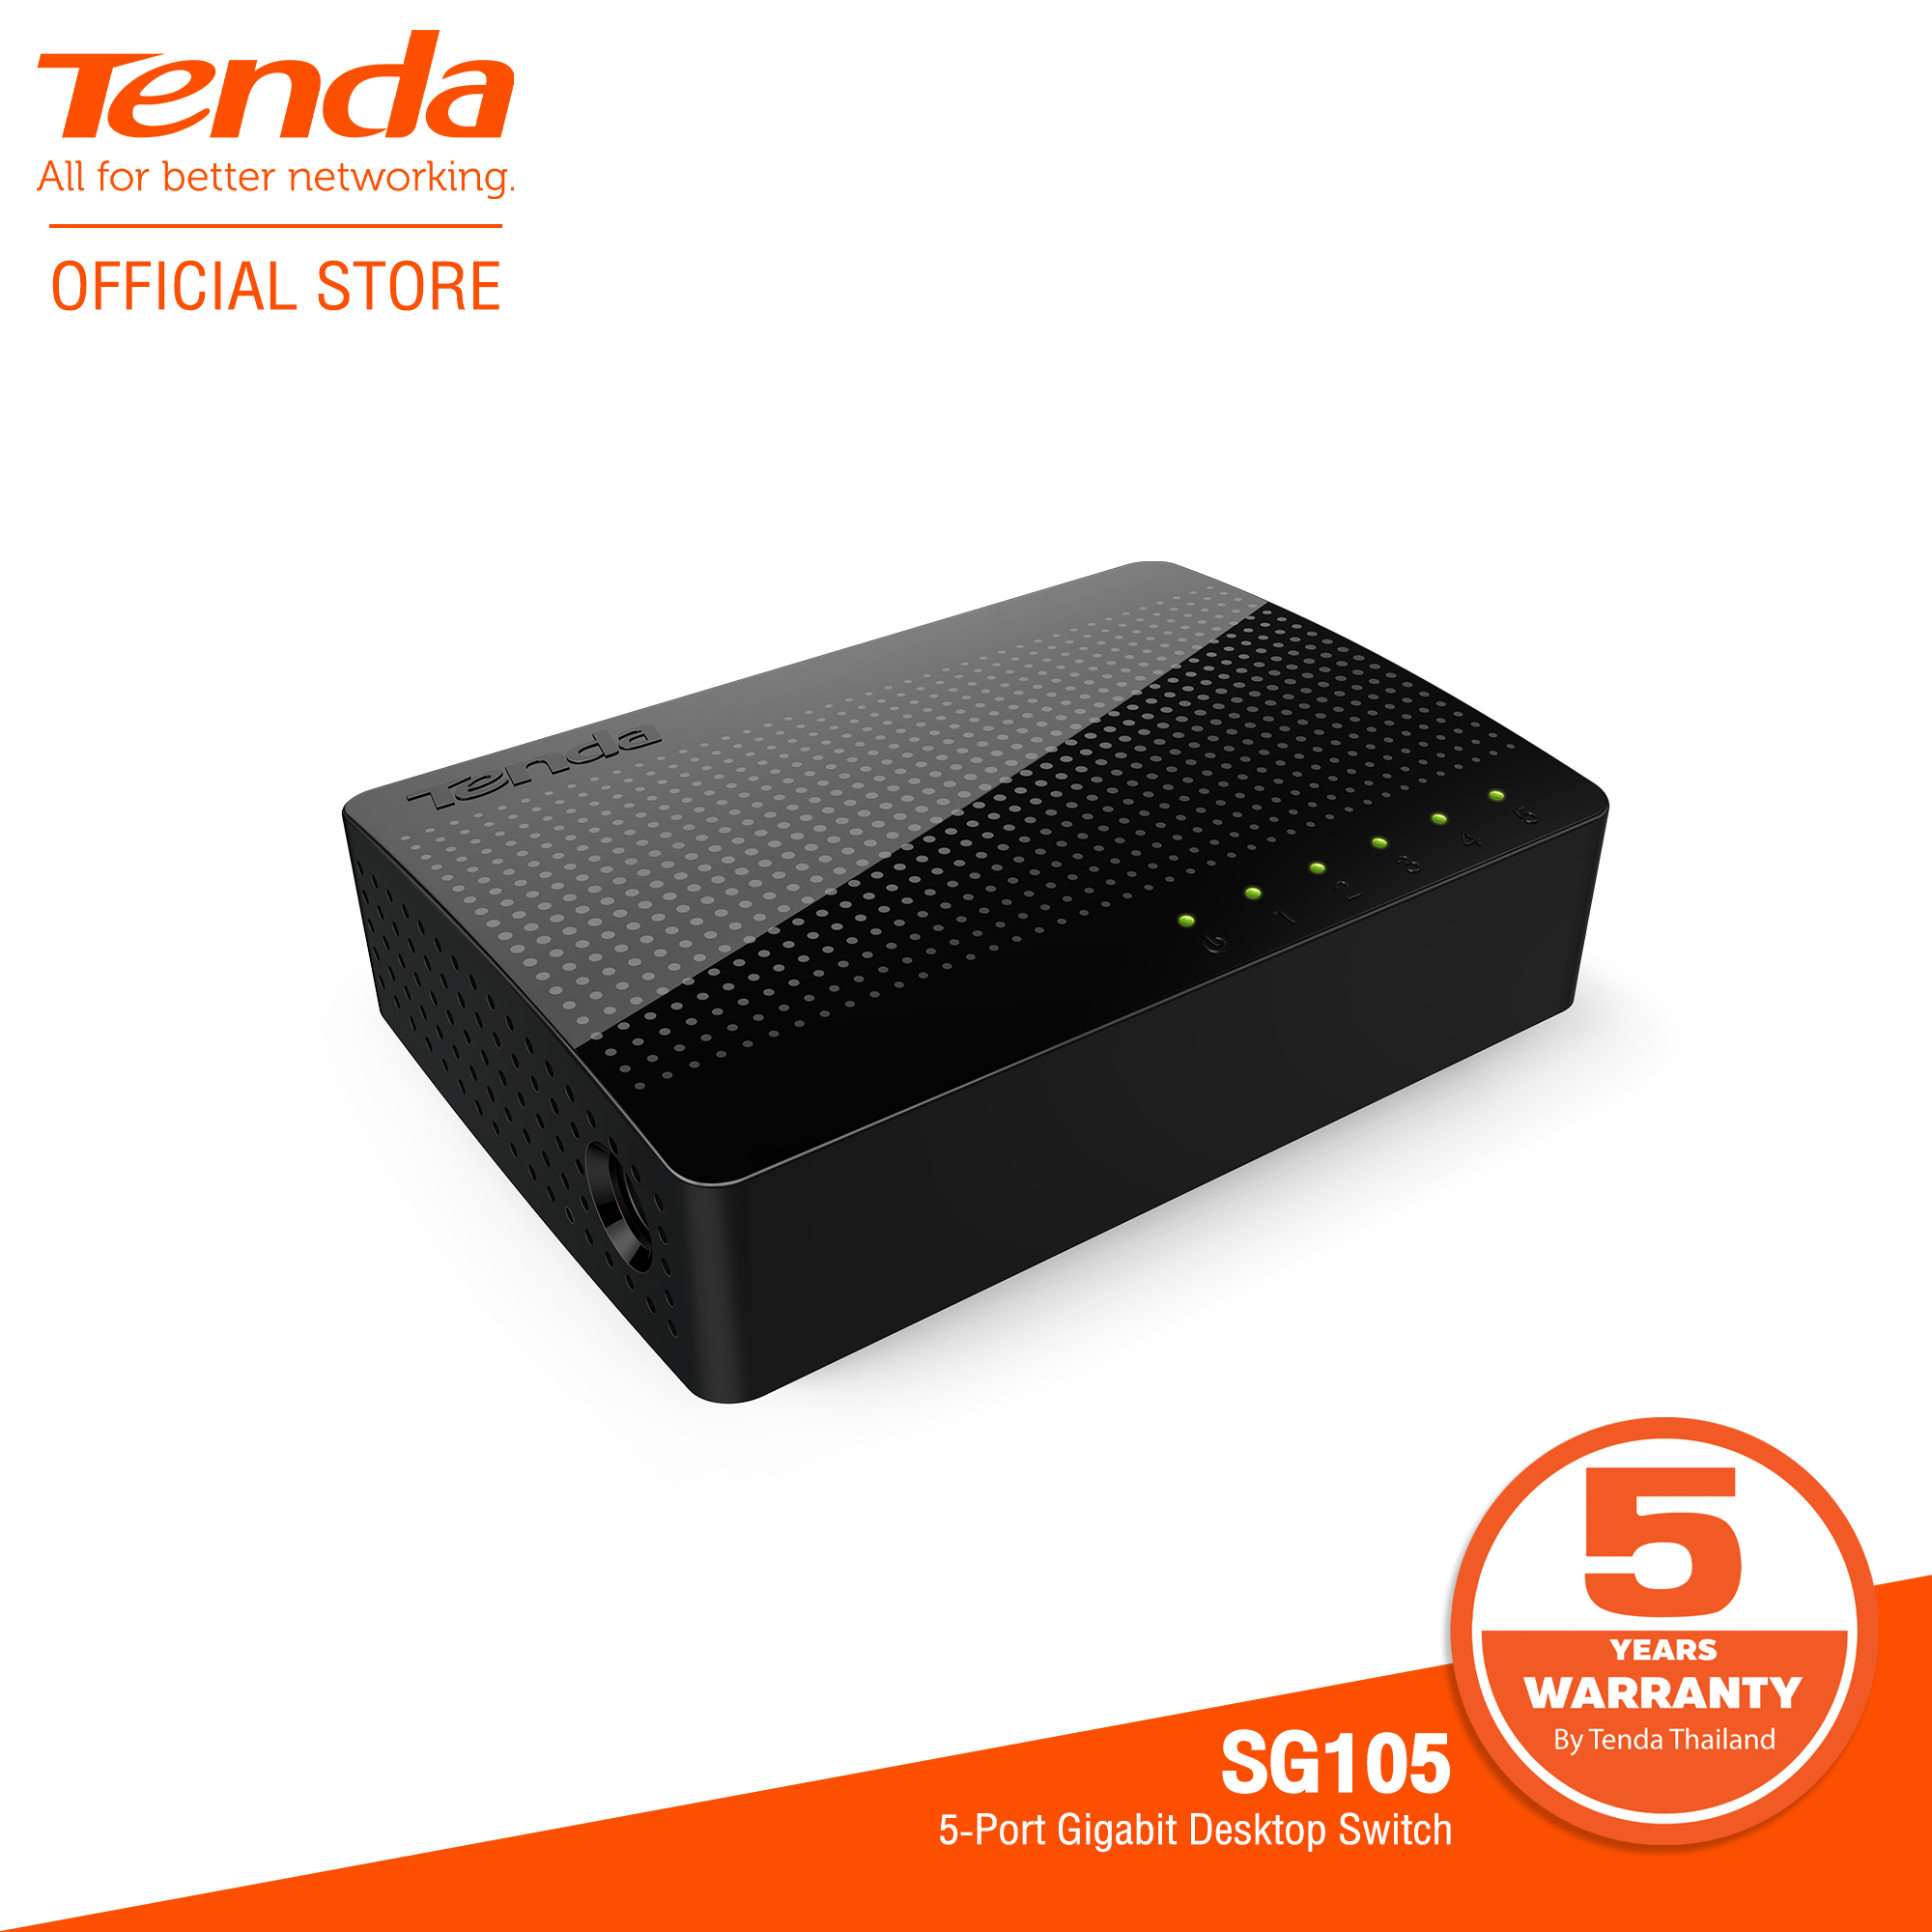 Tenda SG105 5-Port Desktop Gigabit Switch สวิตช์เครือข่ายอีเธอร์เน็ต LAN HUB มีพอร์ตเชื่อมต่อ 10/100/1000Mbps จำนวน 5 พอร์ต ใช้เพื่อสร้างเครือข่าย LAN หรือขยายเครือข่ายอัปลิงค์ เมื่อเทียบกับสวิตช์ 100M เพิ่มความเร็วในการส่งข้อมูลได้สูงสุด 10 ครั้ง